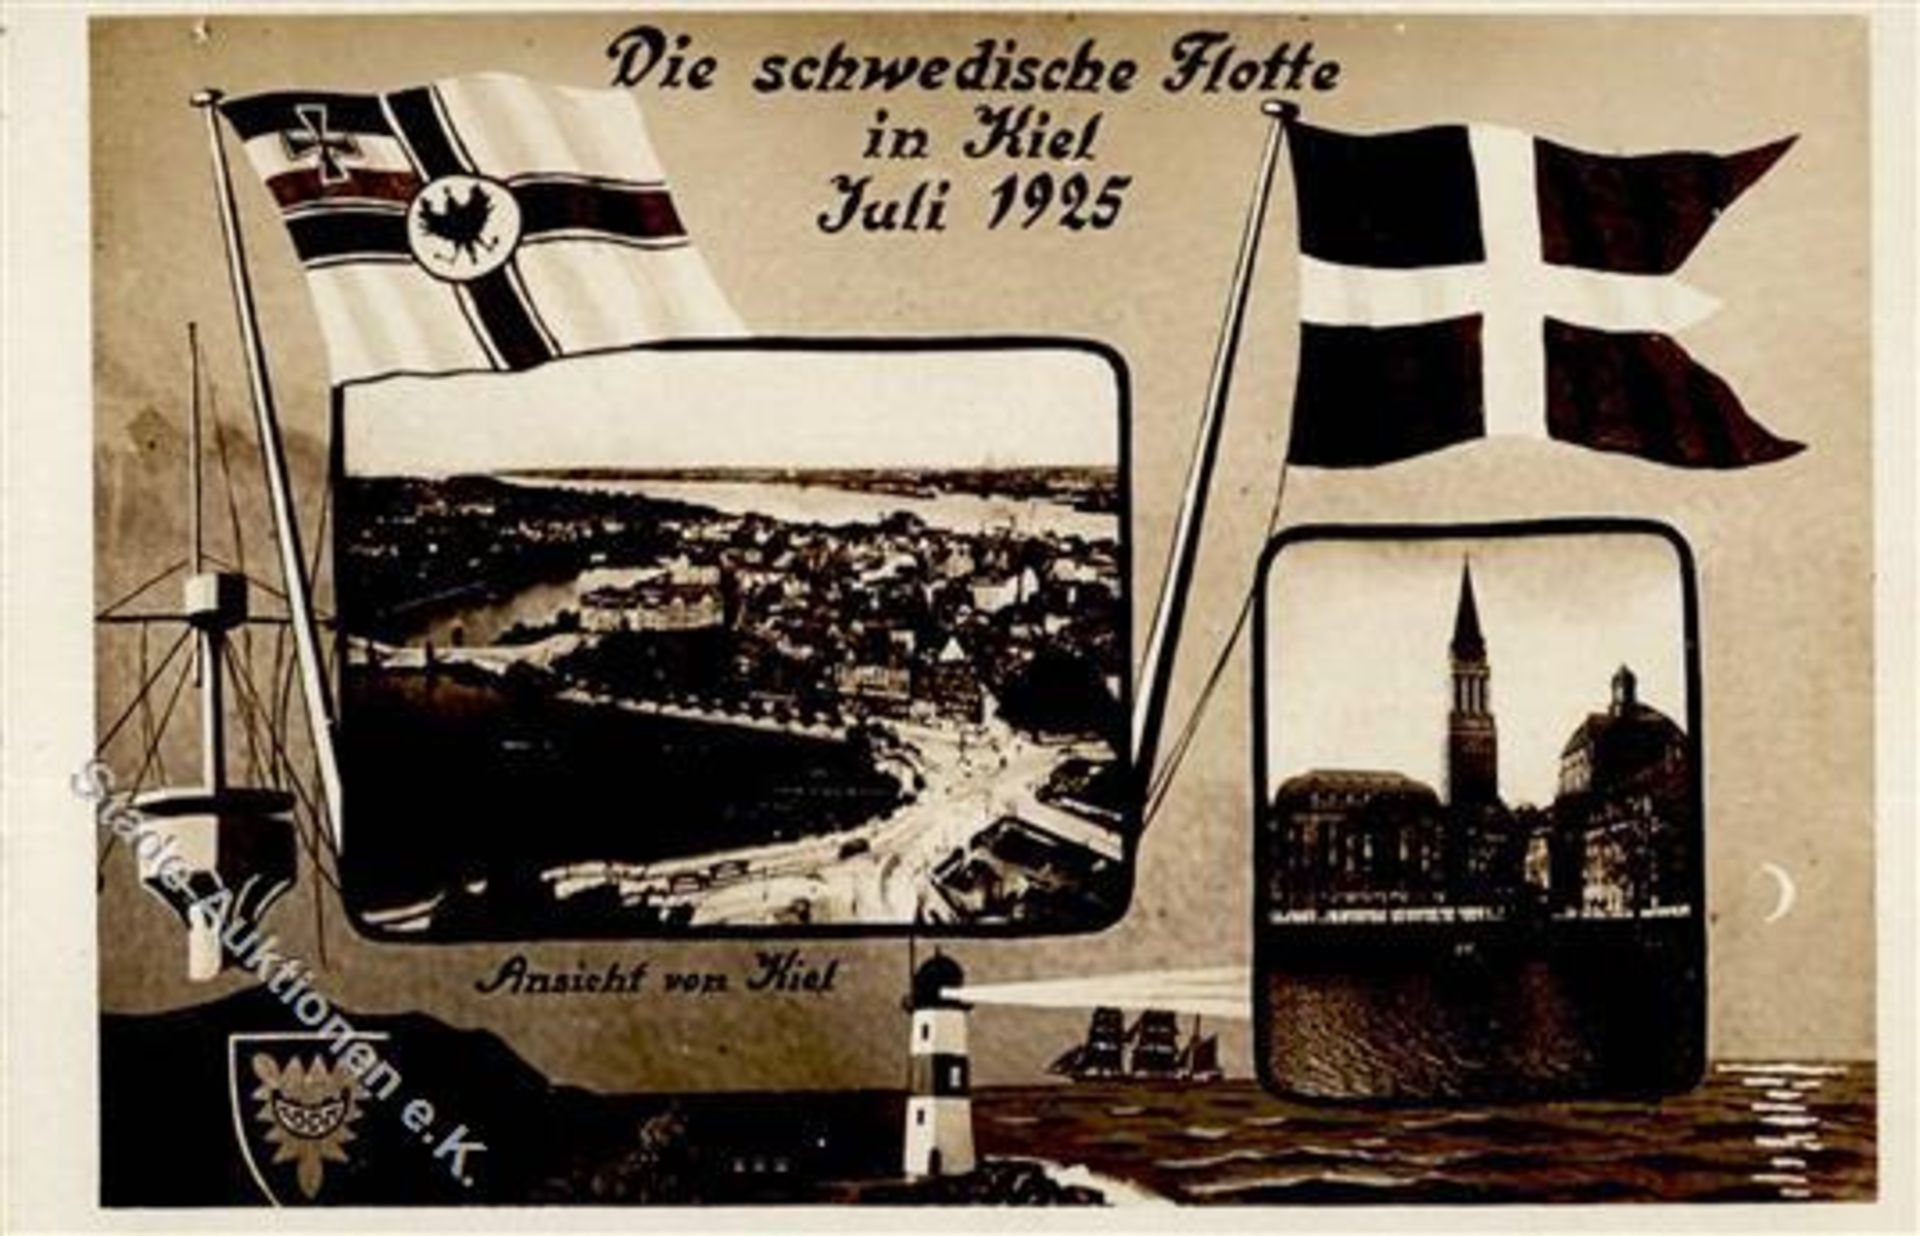 KIEL (2300) - die SCHWEDISCHE FLOTTE Juli 1925 in Kiel IDieses Los wird in einer online-Auktion ohne